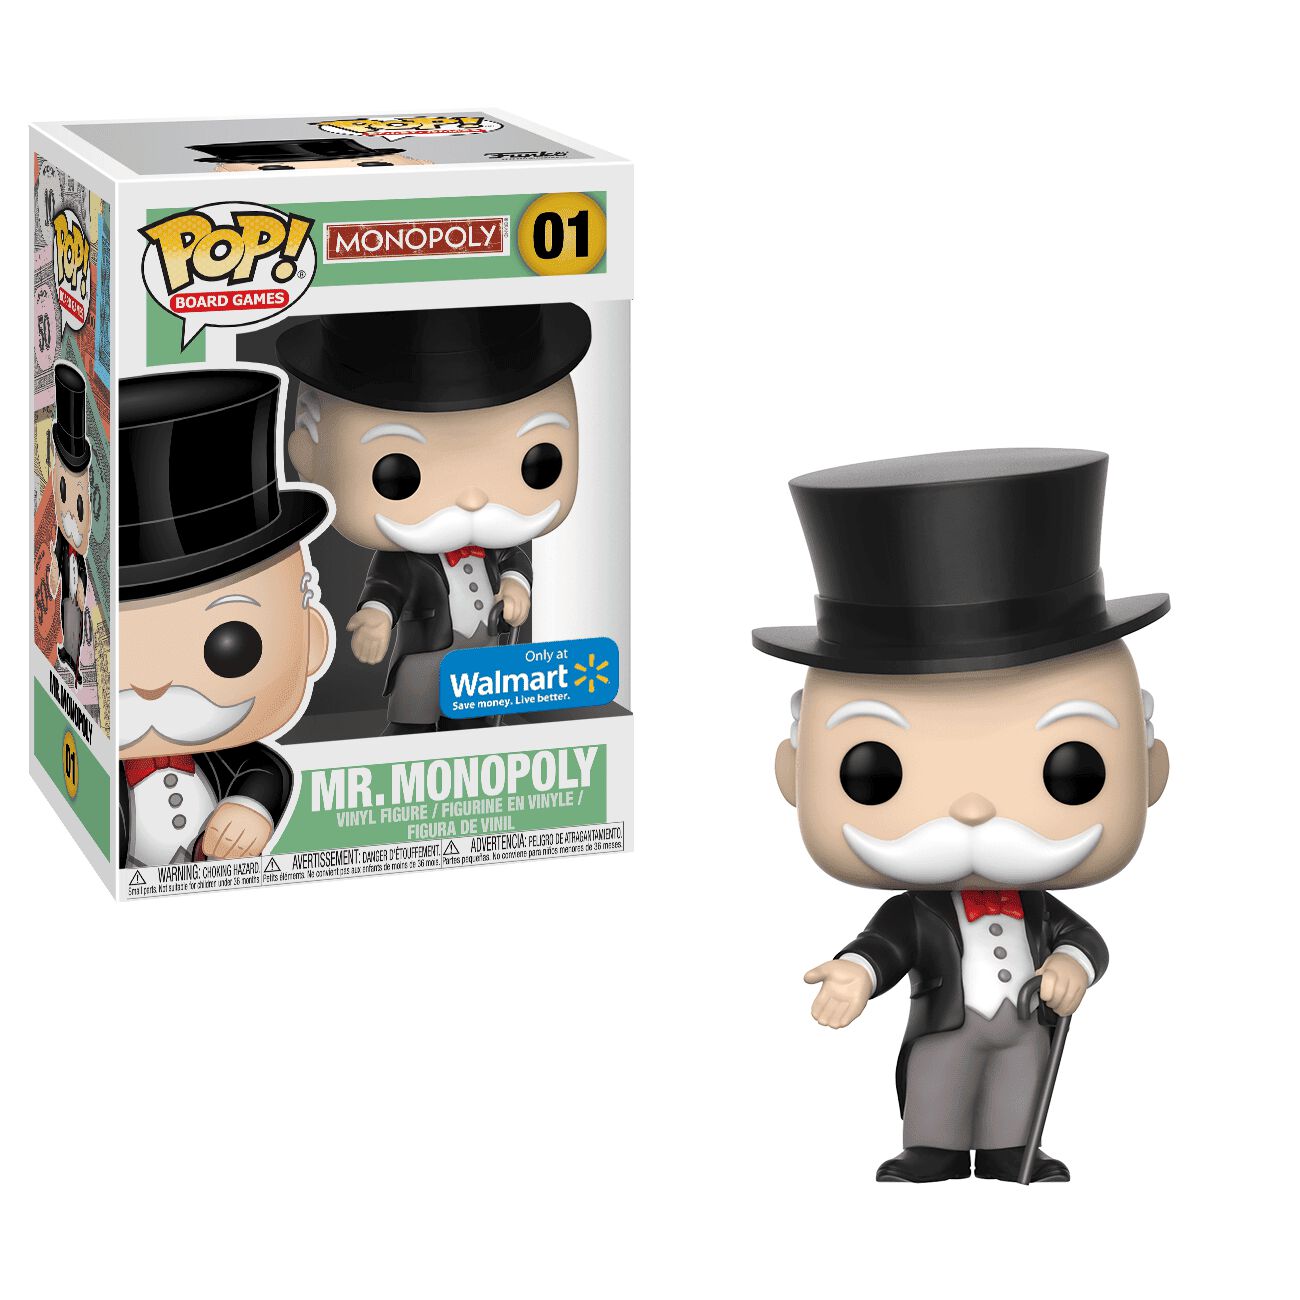 Coming Soon: Walmart Mr. Monopoly Pop! Exclusive!